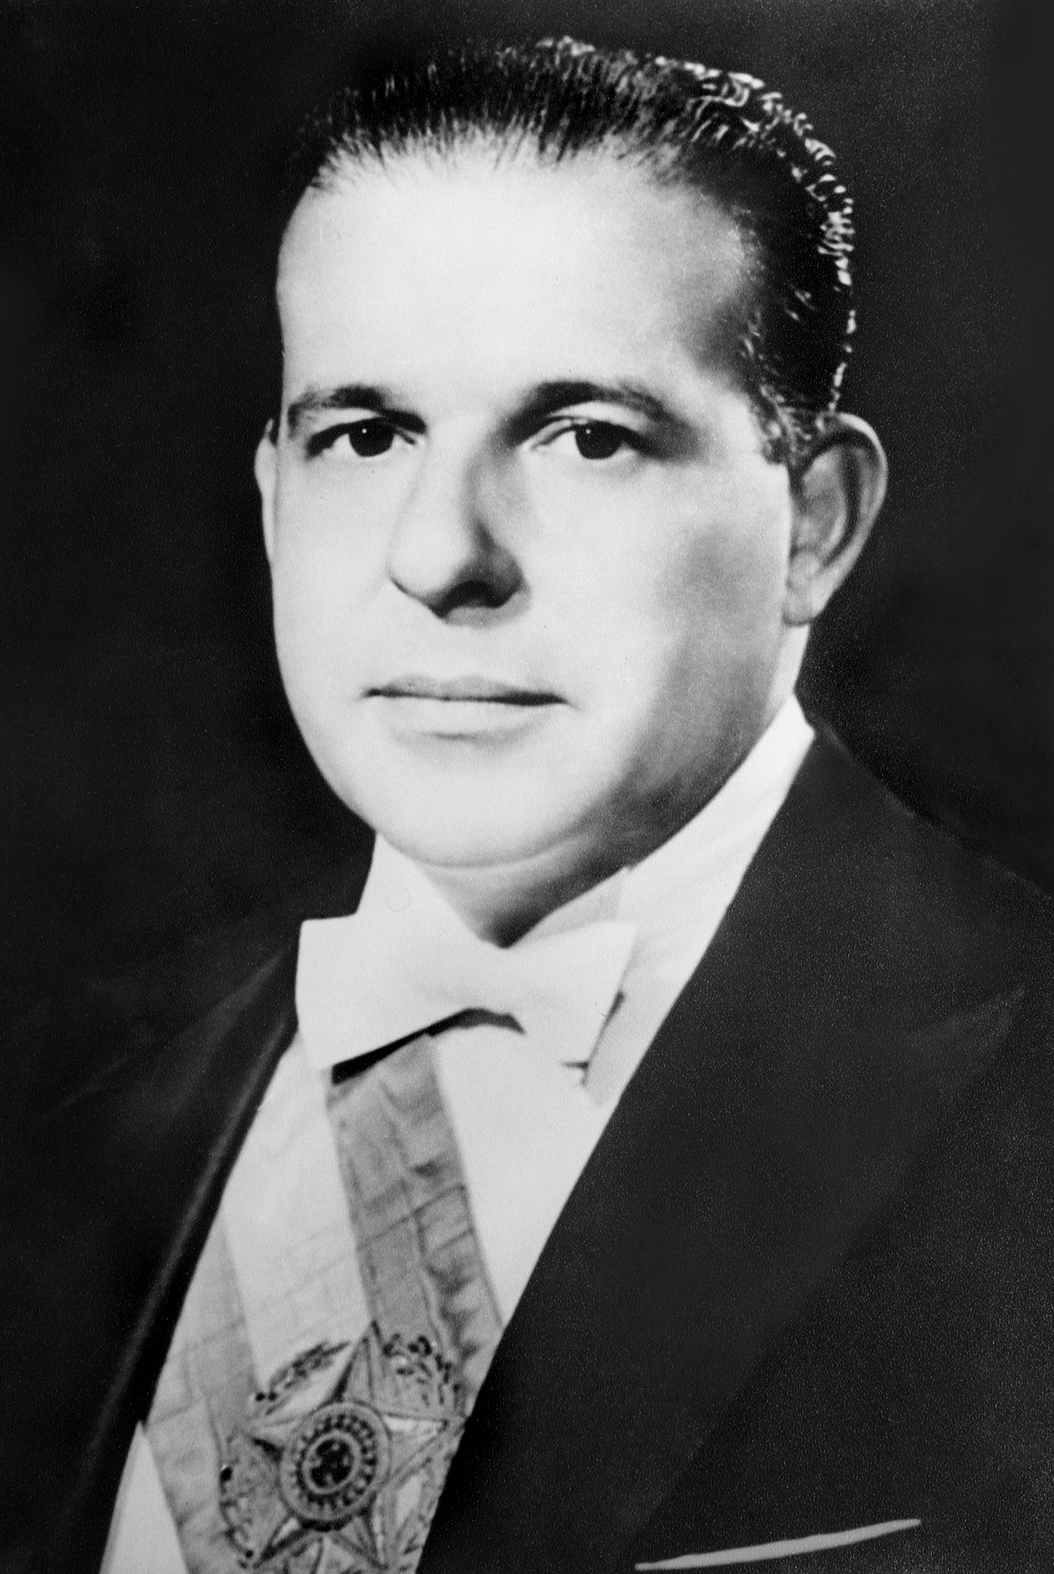 Getúlio Vargas – Wikipédia, a enciclopédia livre